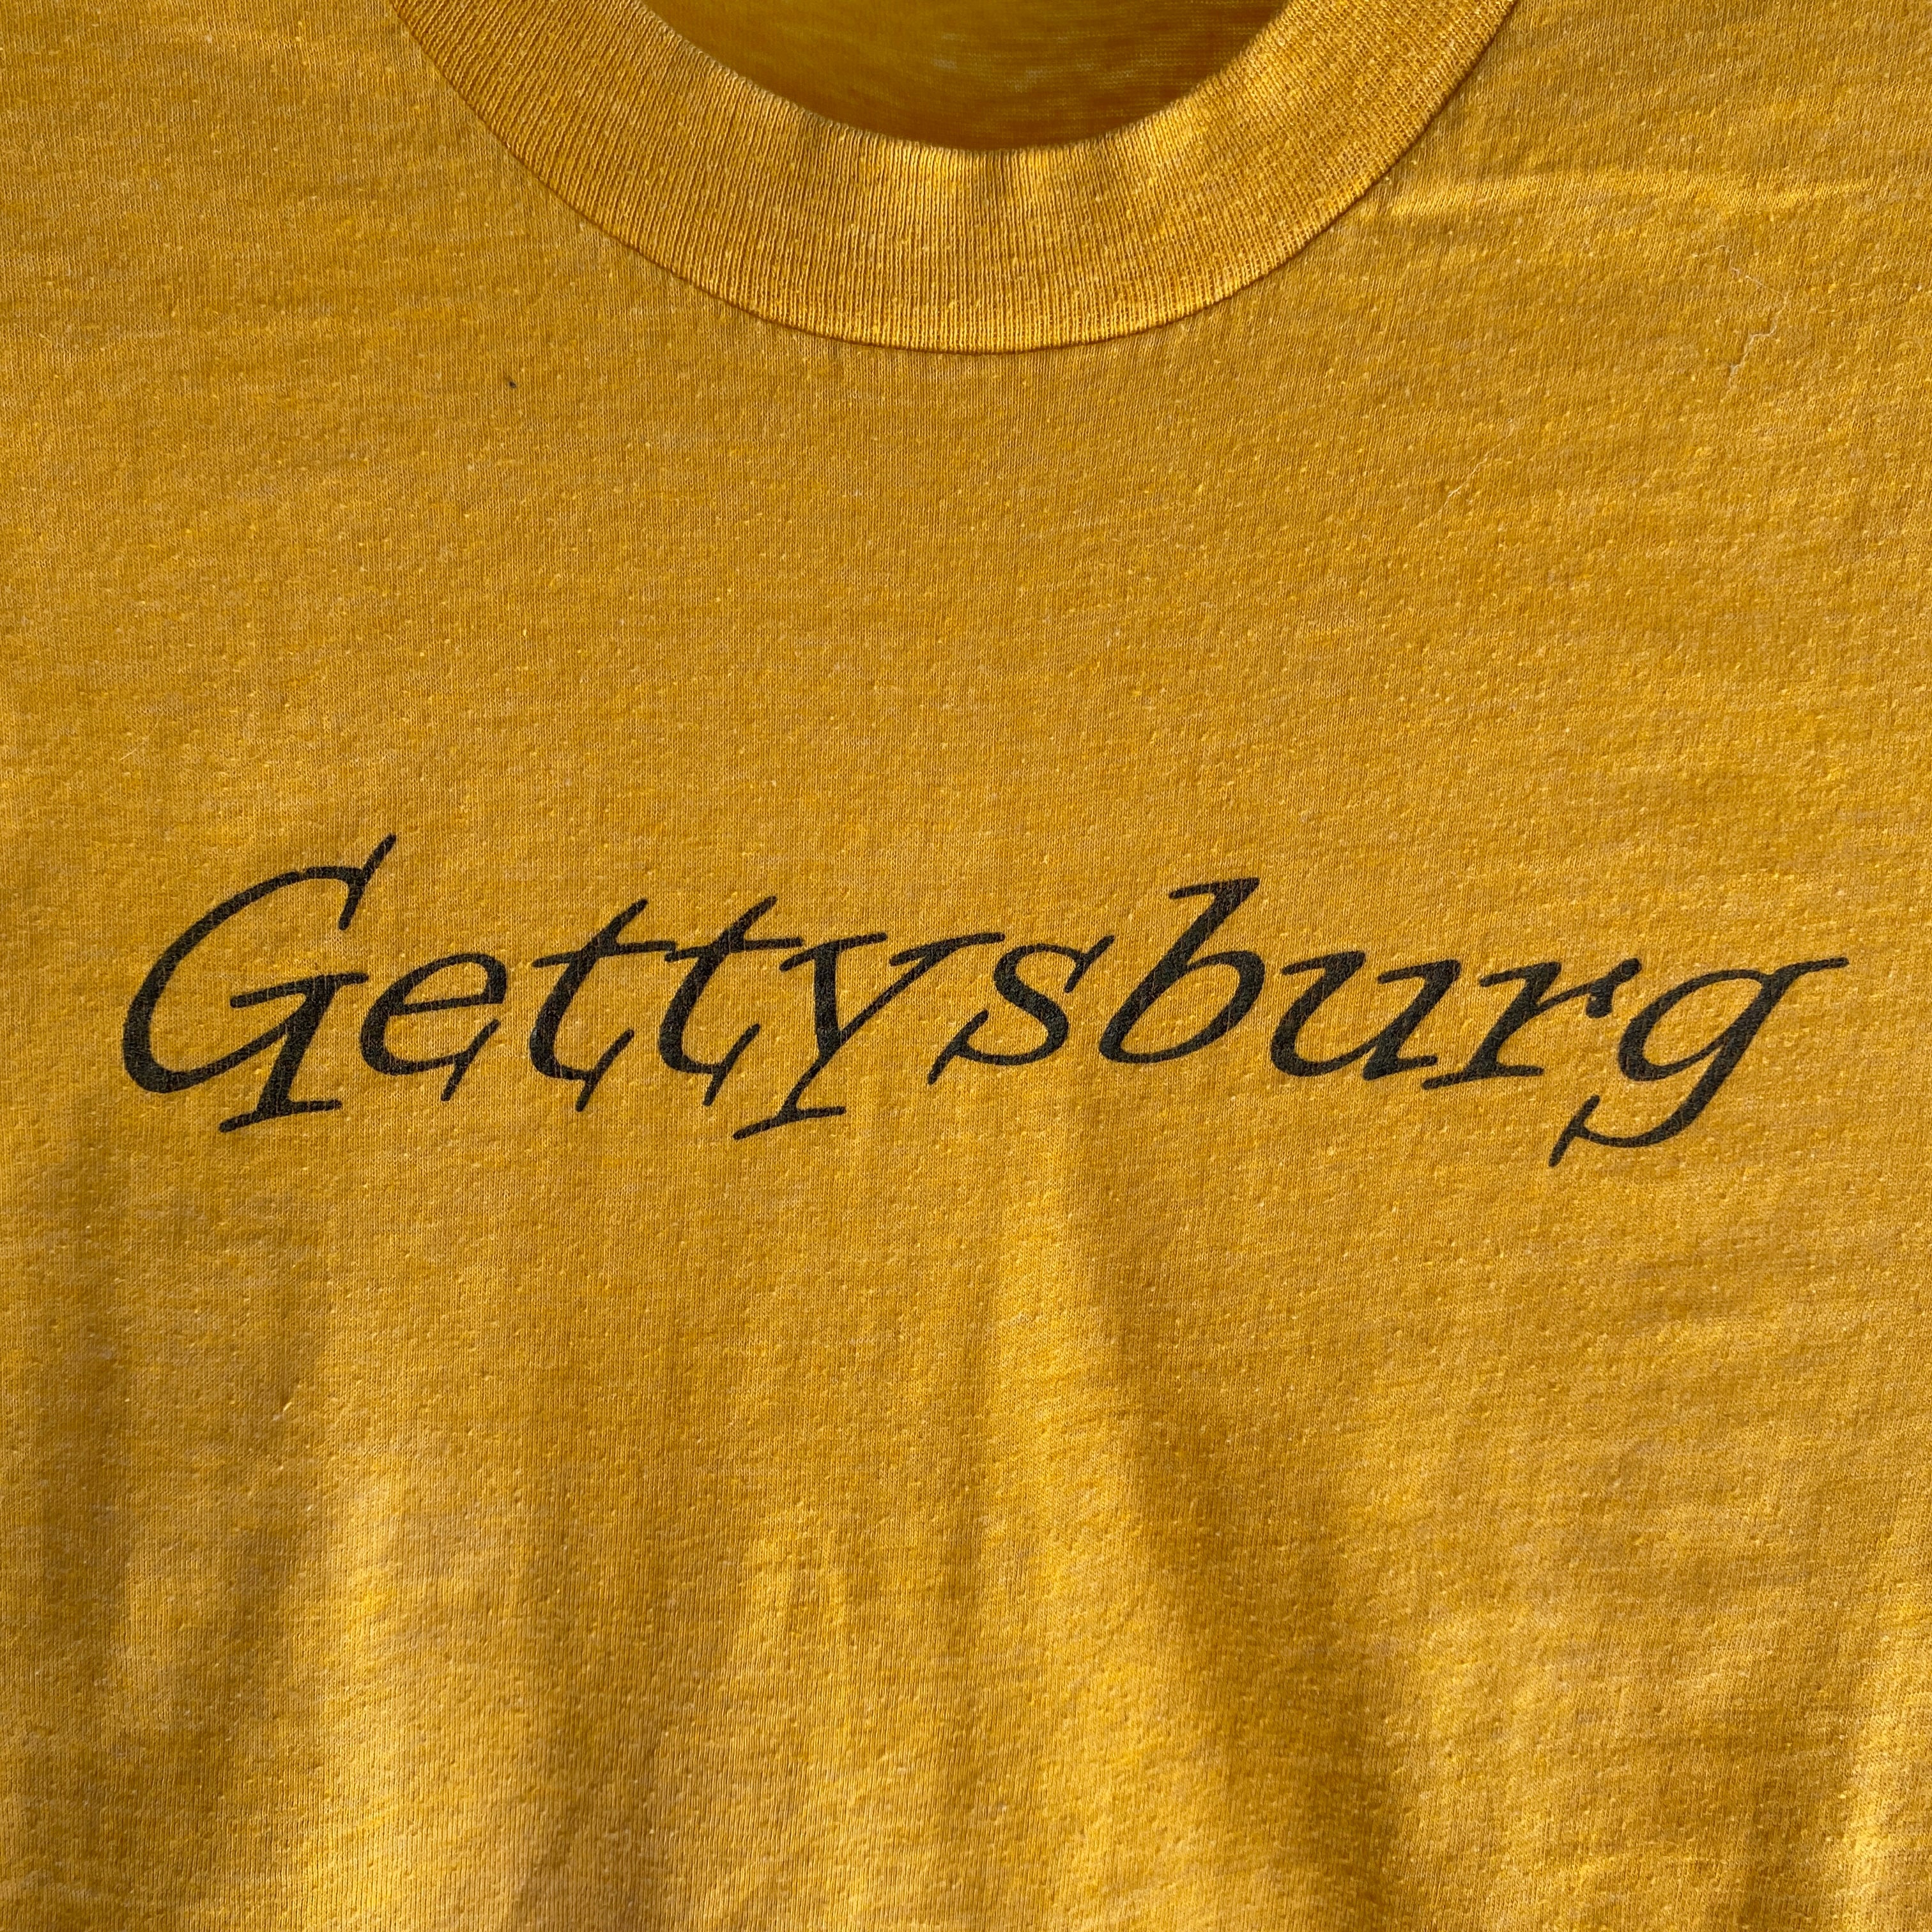 T-shirt Gettysburg Tourist des années 1970 en jaune moutarde